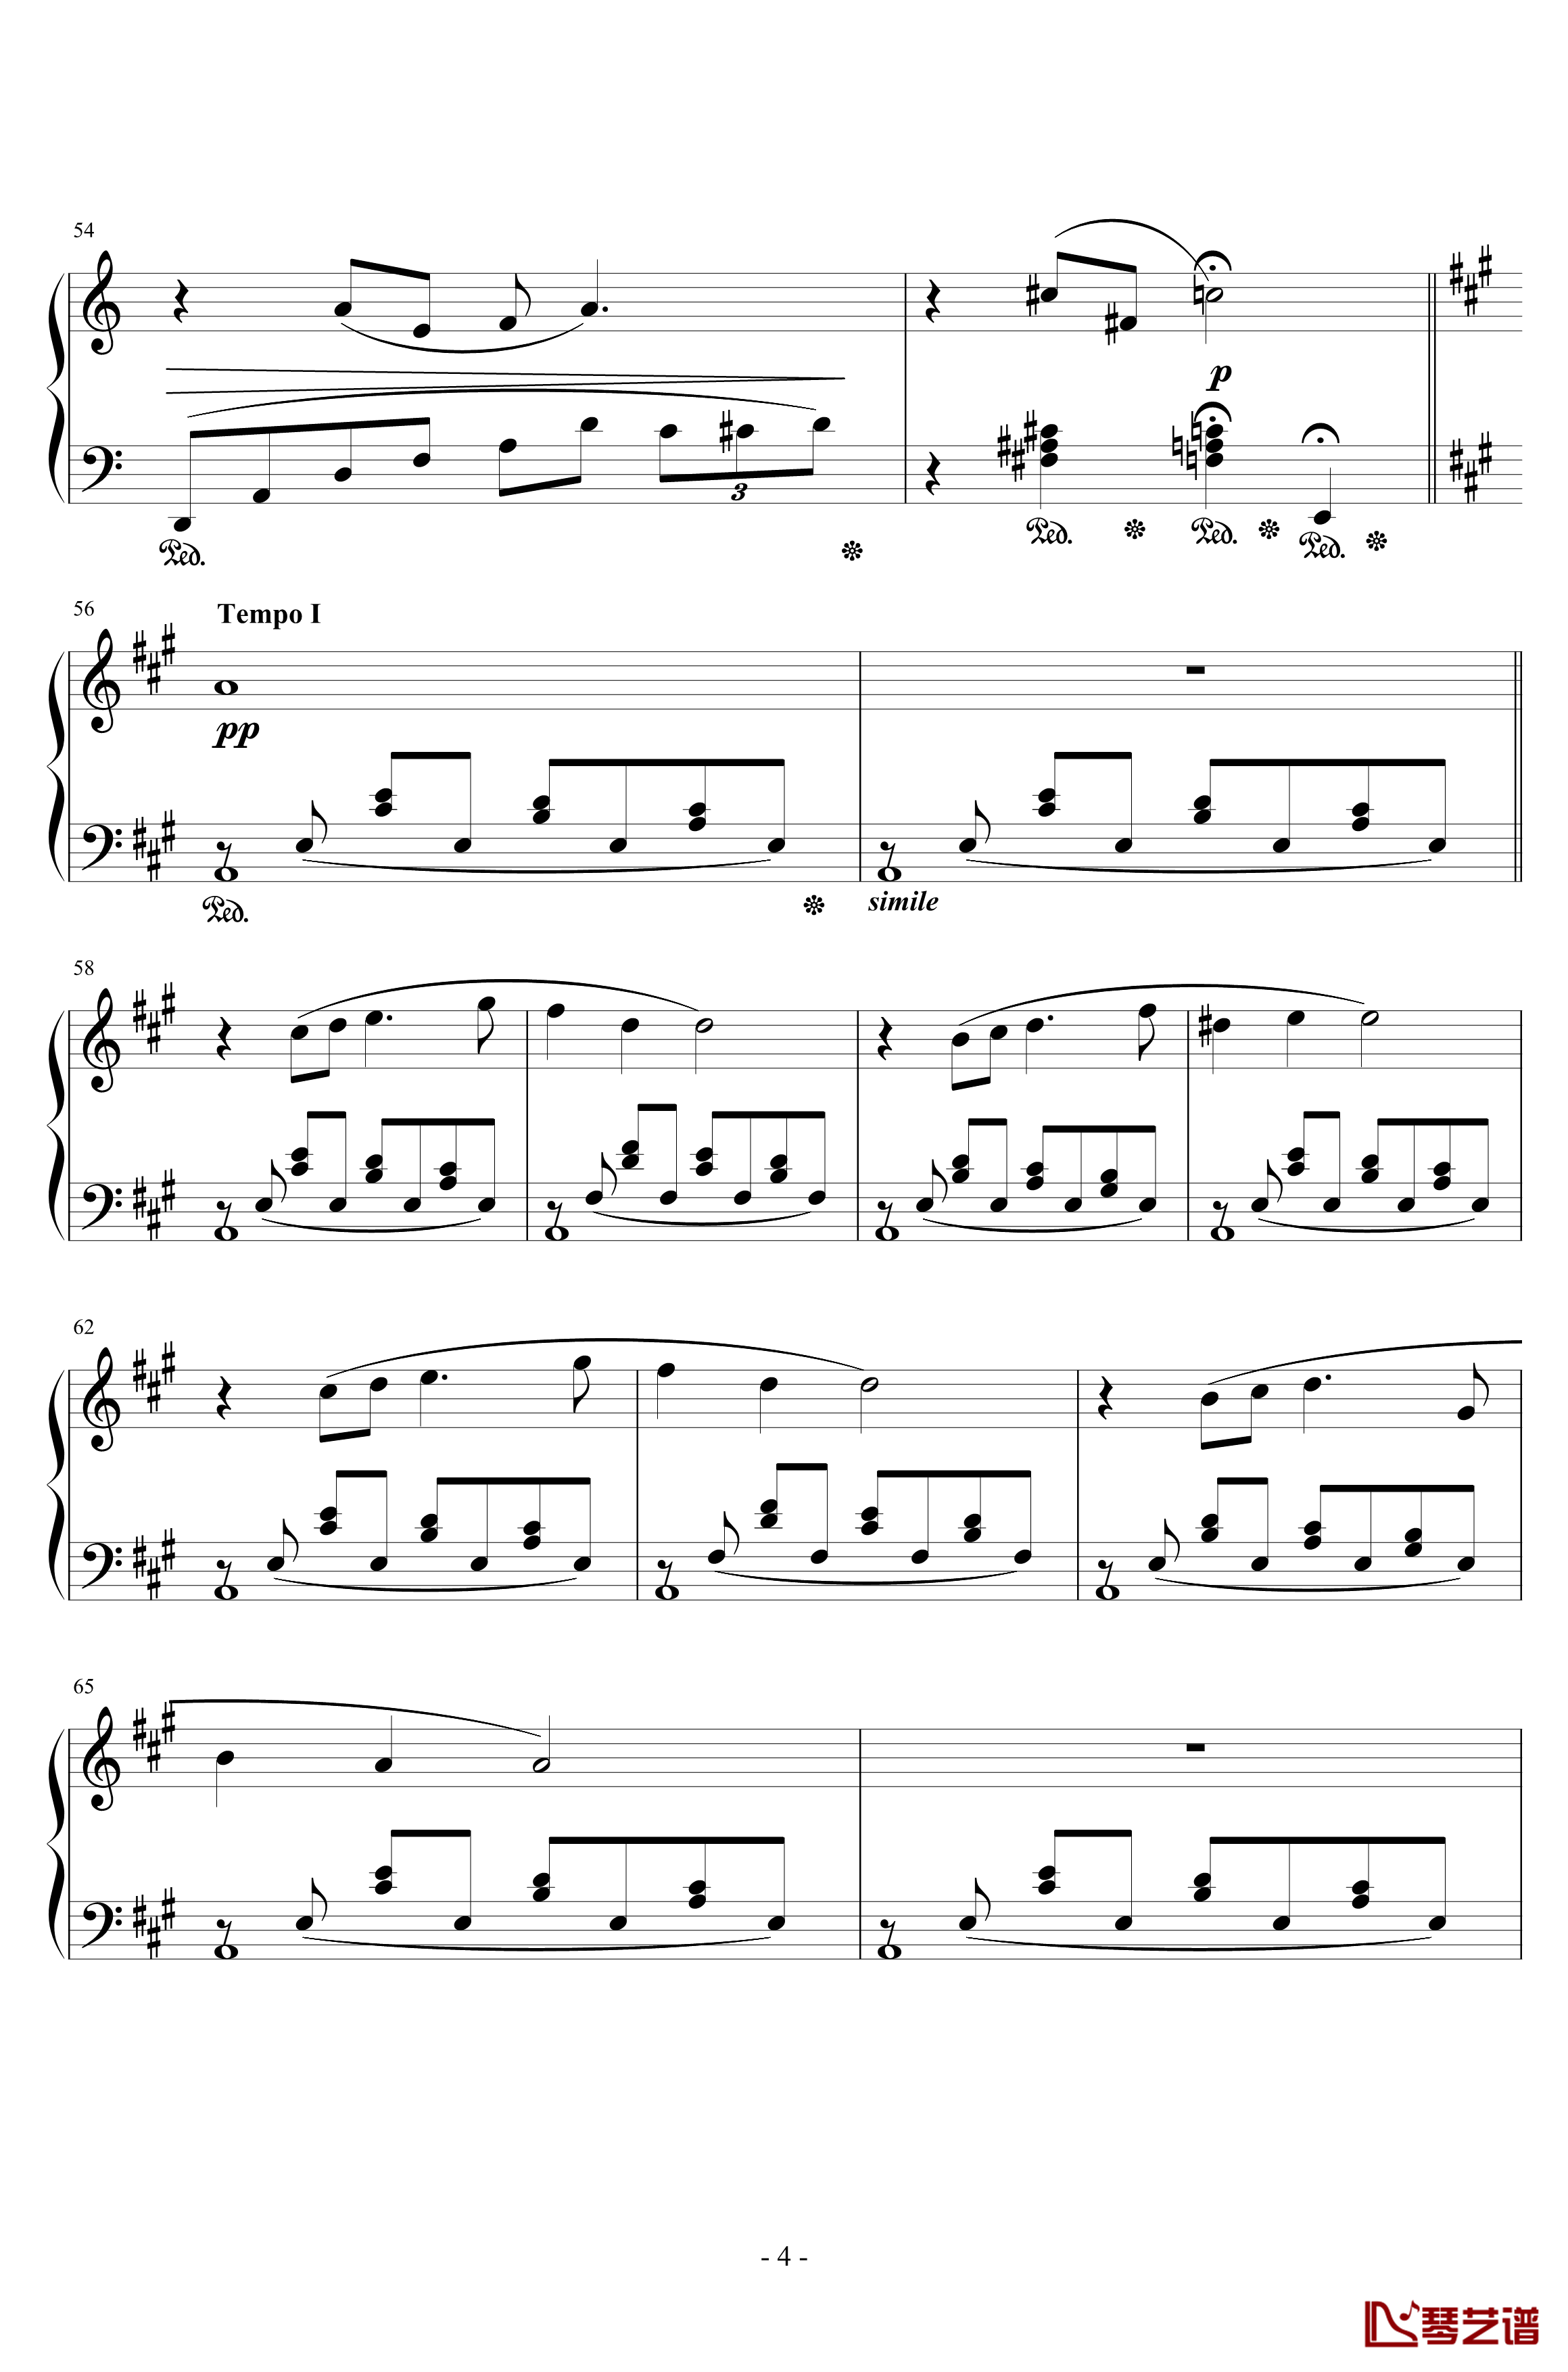 最终幻想8花园主题音乐钢琴谱-植松伸夫4